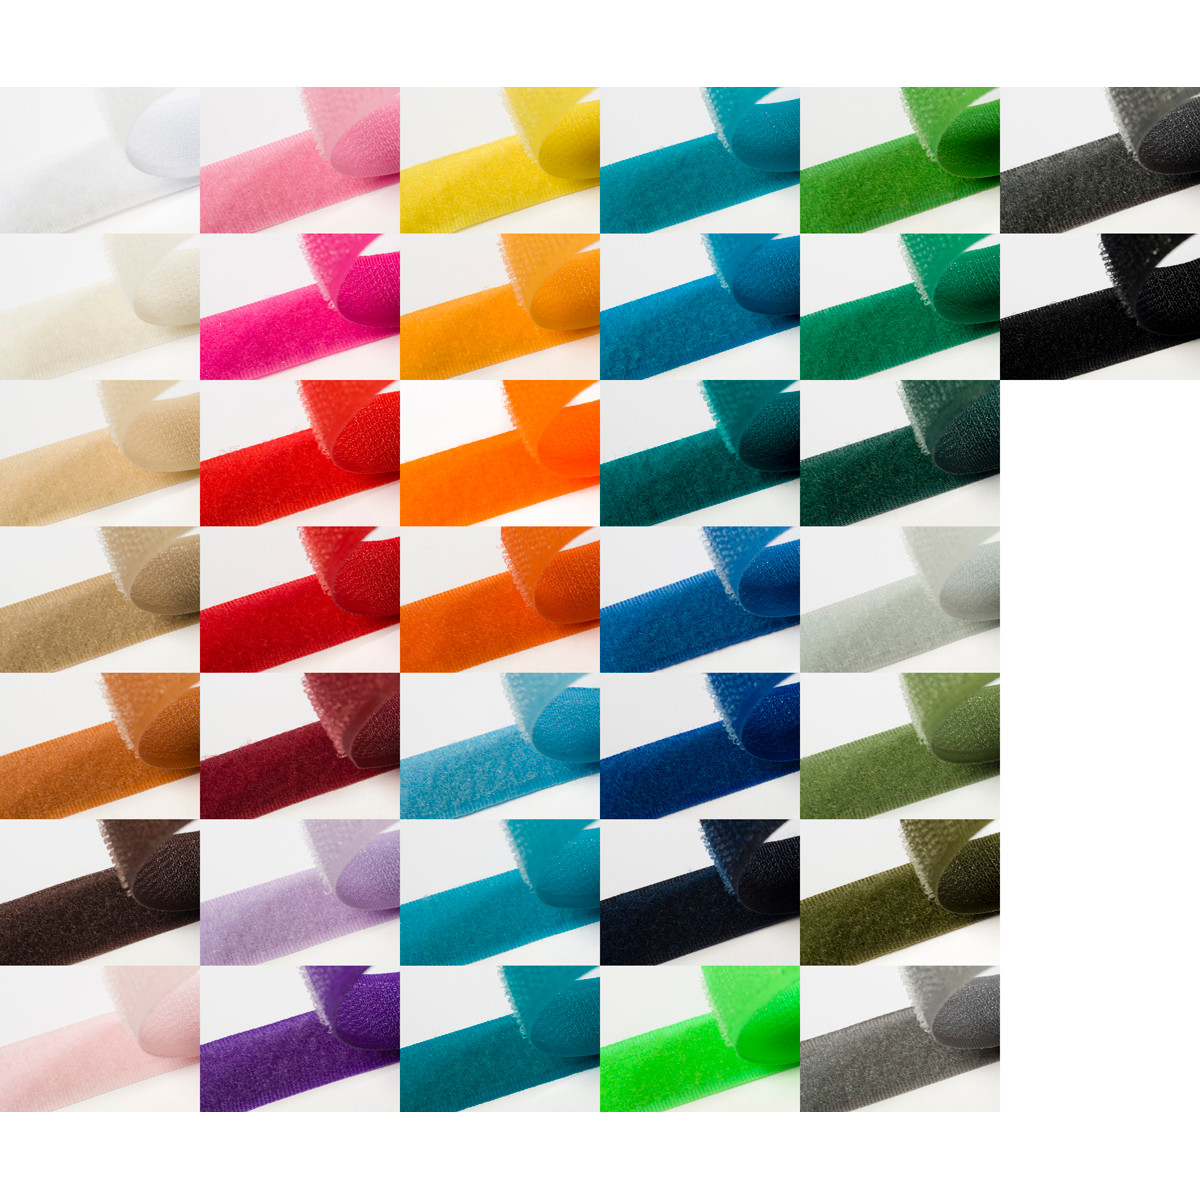 Klettband zum aufnähen 20mm breit in 37 Farben